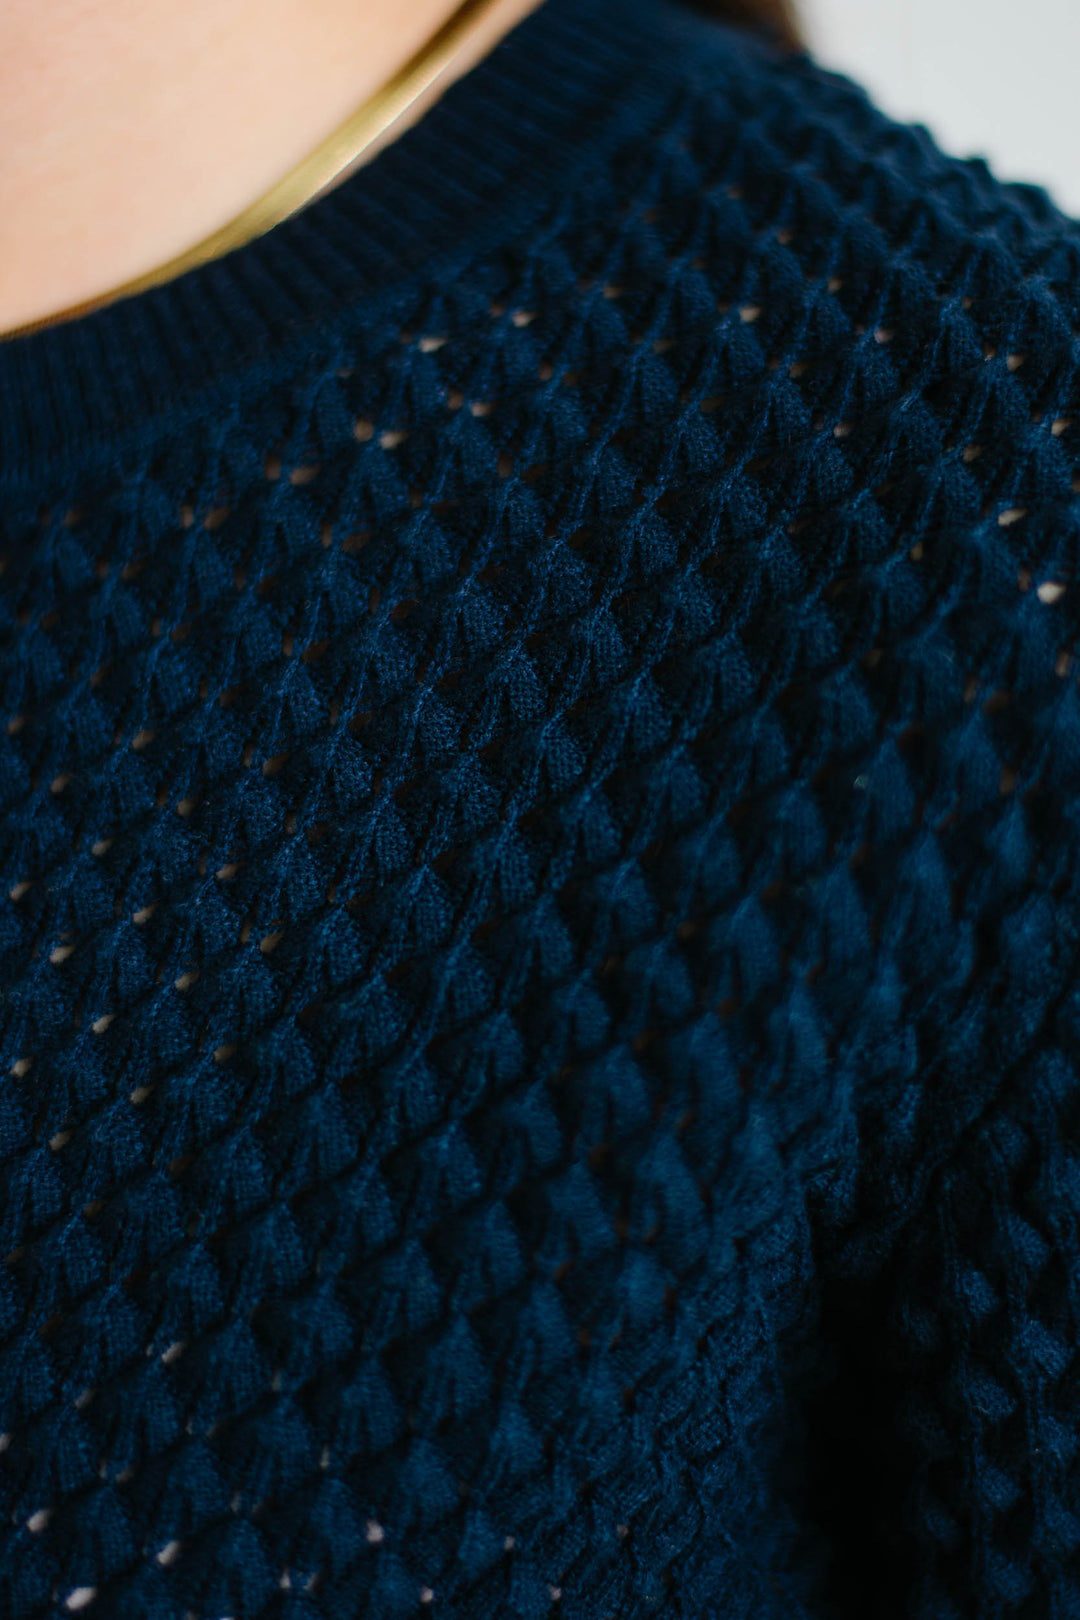 Taryn Bubble Knit Sweater - Navy